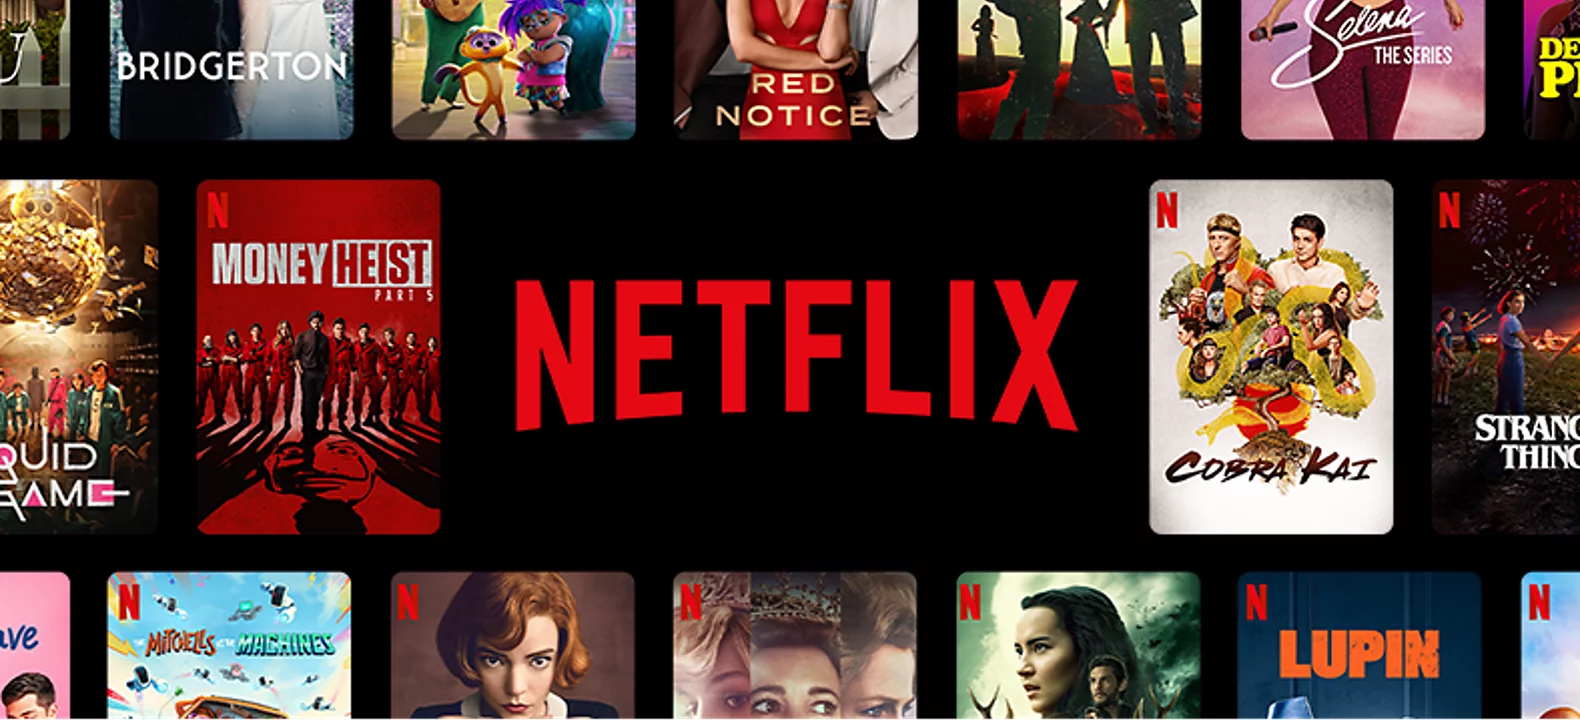 Netflix pretplata 1 godina filmovi besplatno gledanje online jeftino cena srbija serije 